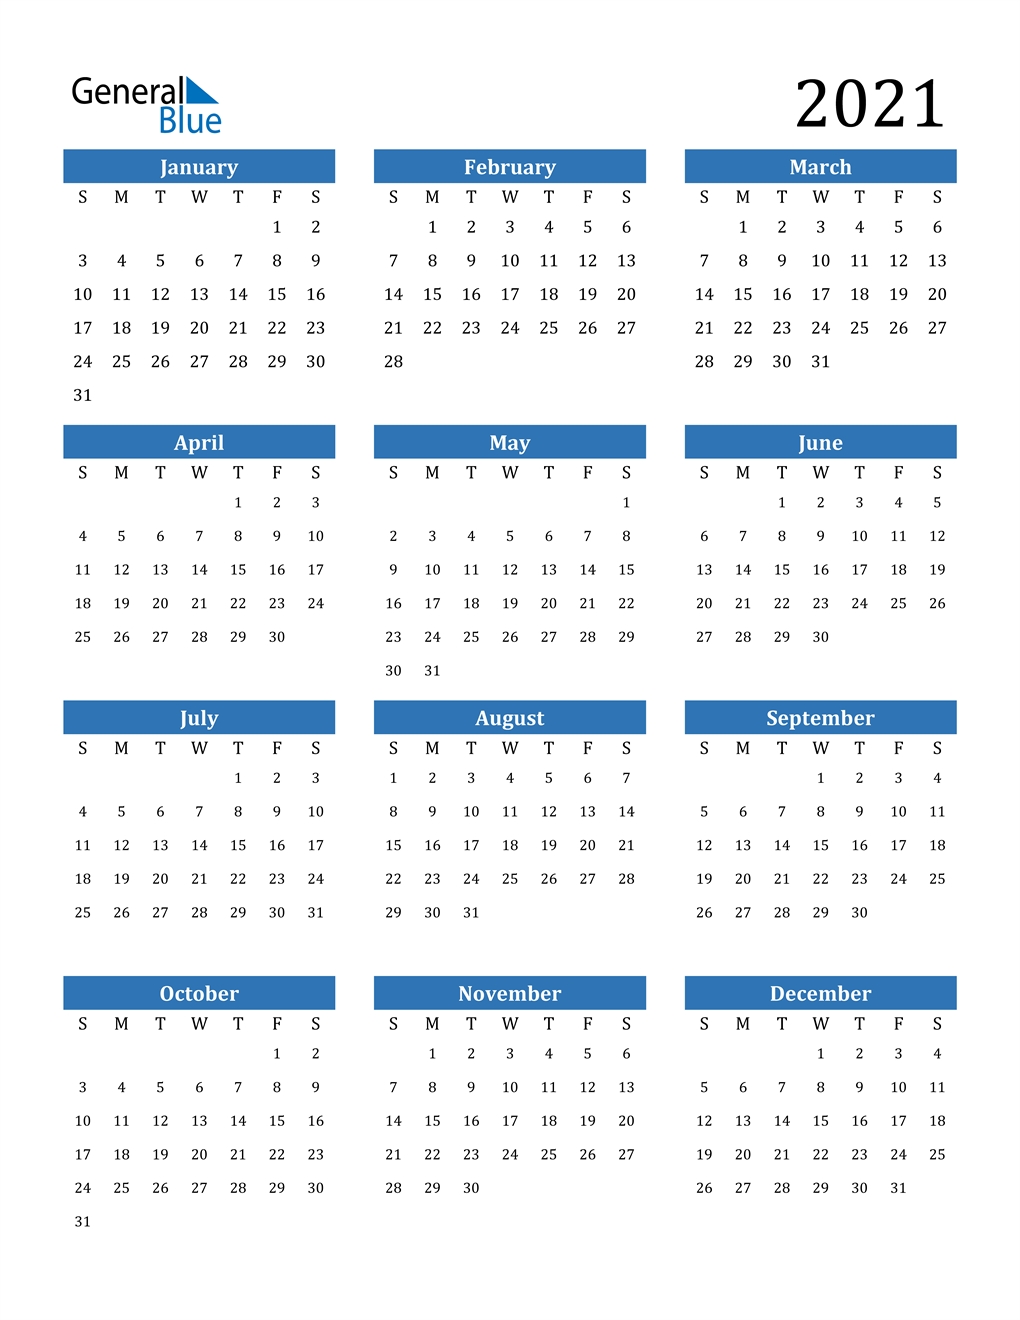 Get 2021 Week Dates Excel